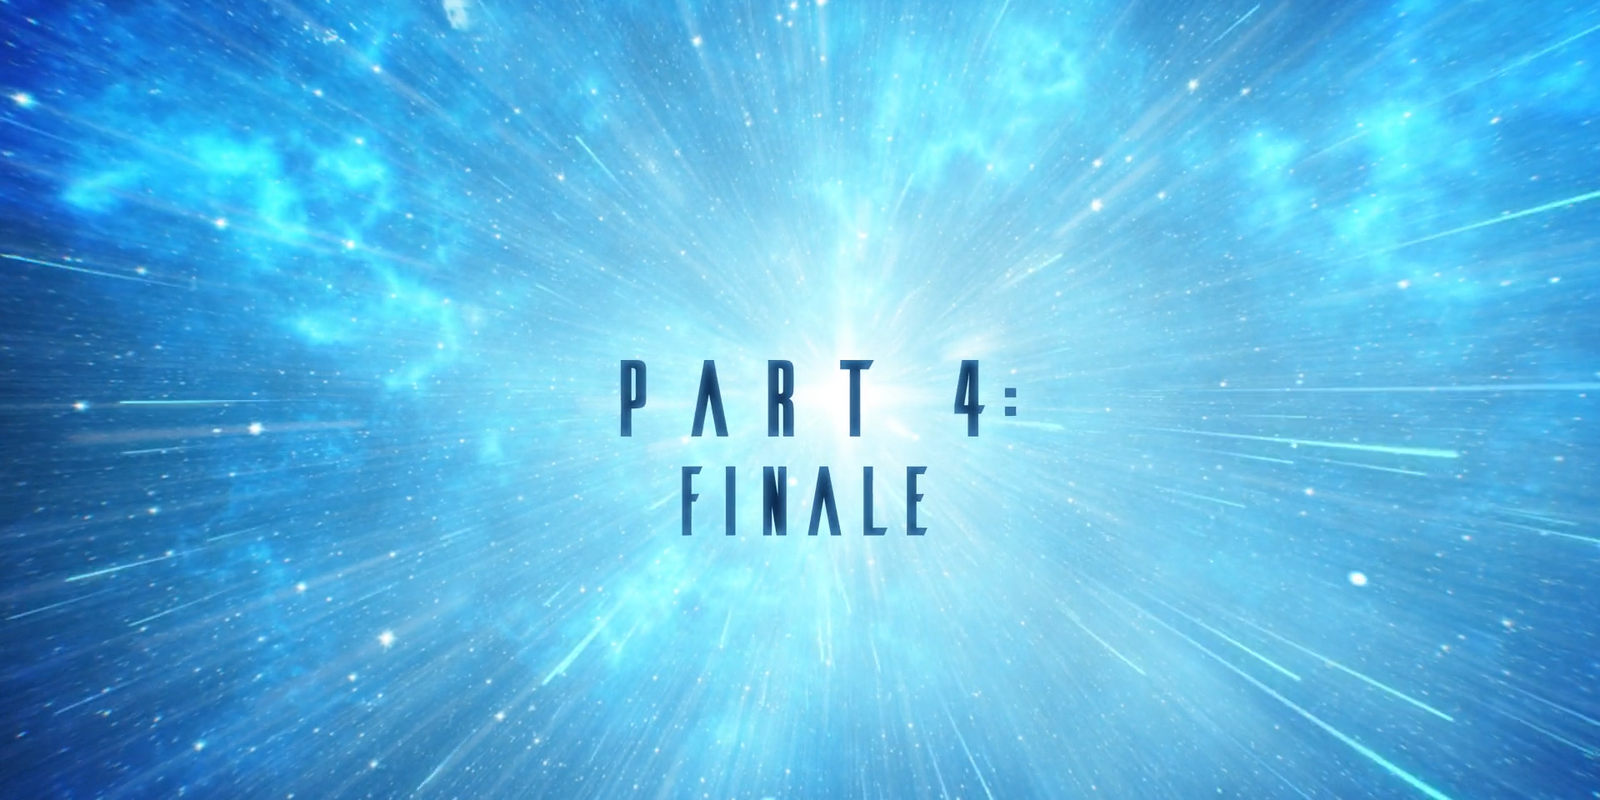 Flash Series Finale Description: “A New World, Part Four”